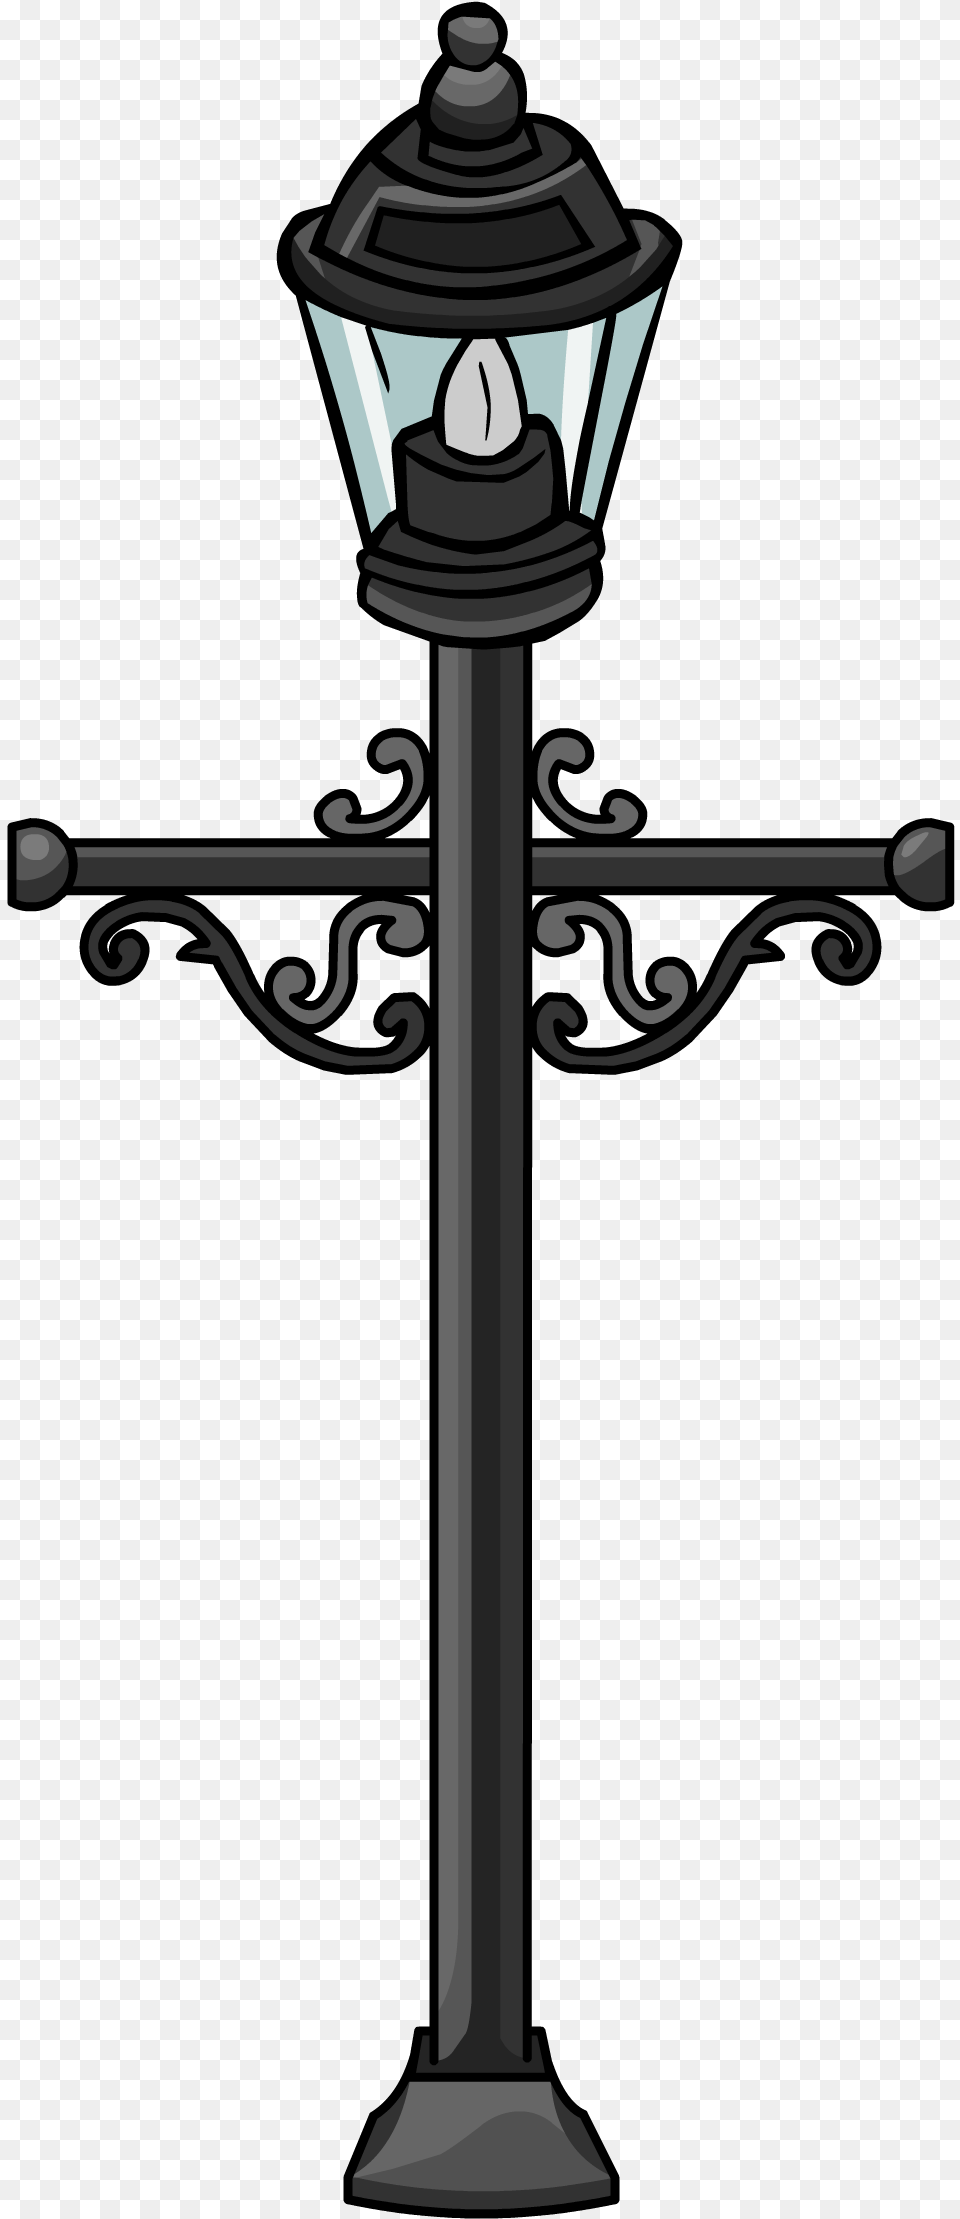 Lamp Post Lamp Sprite, Lamp Post, Cross, Symbol Png Image